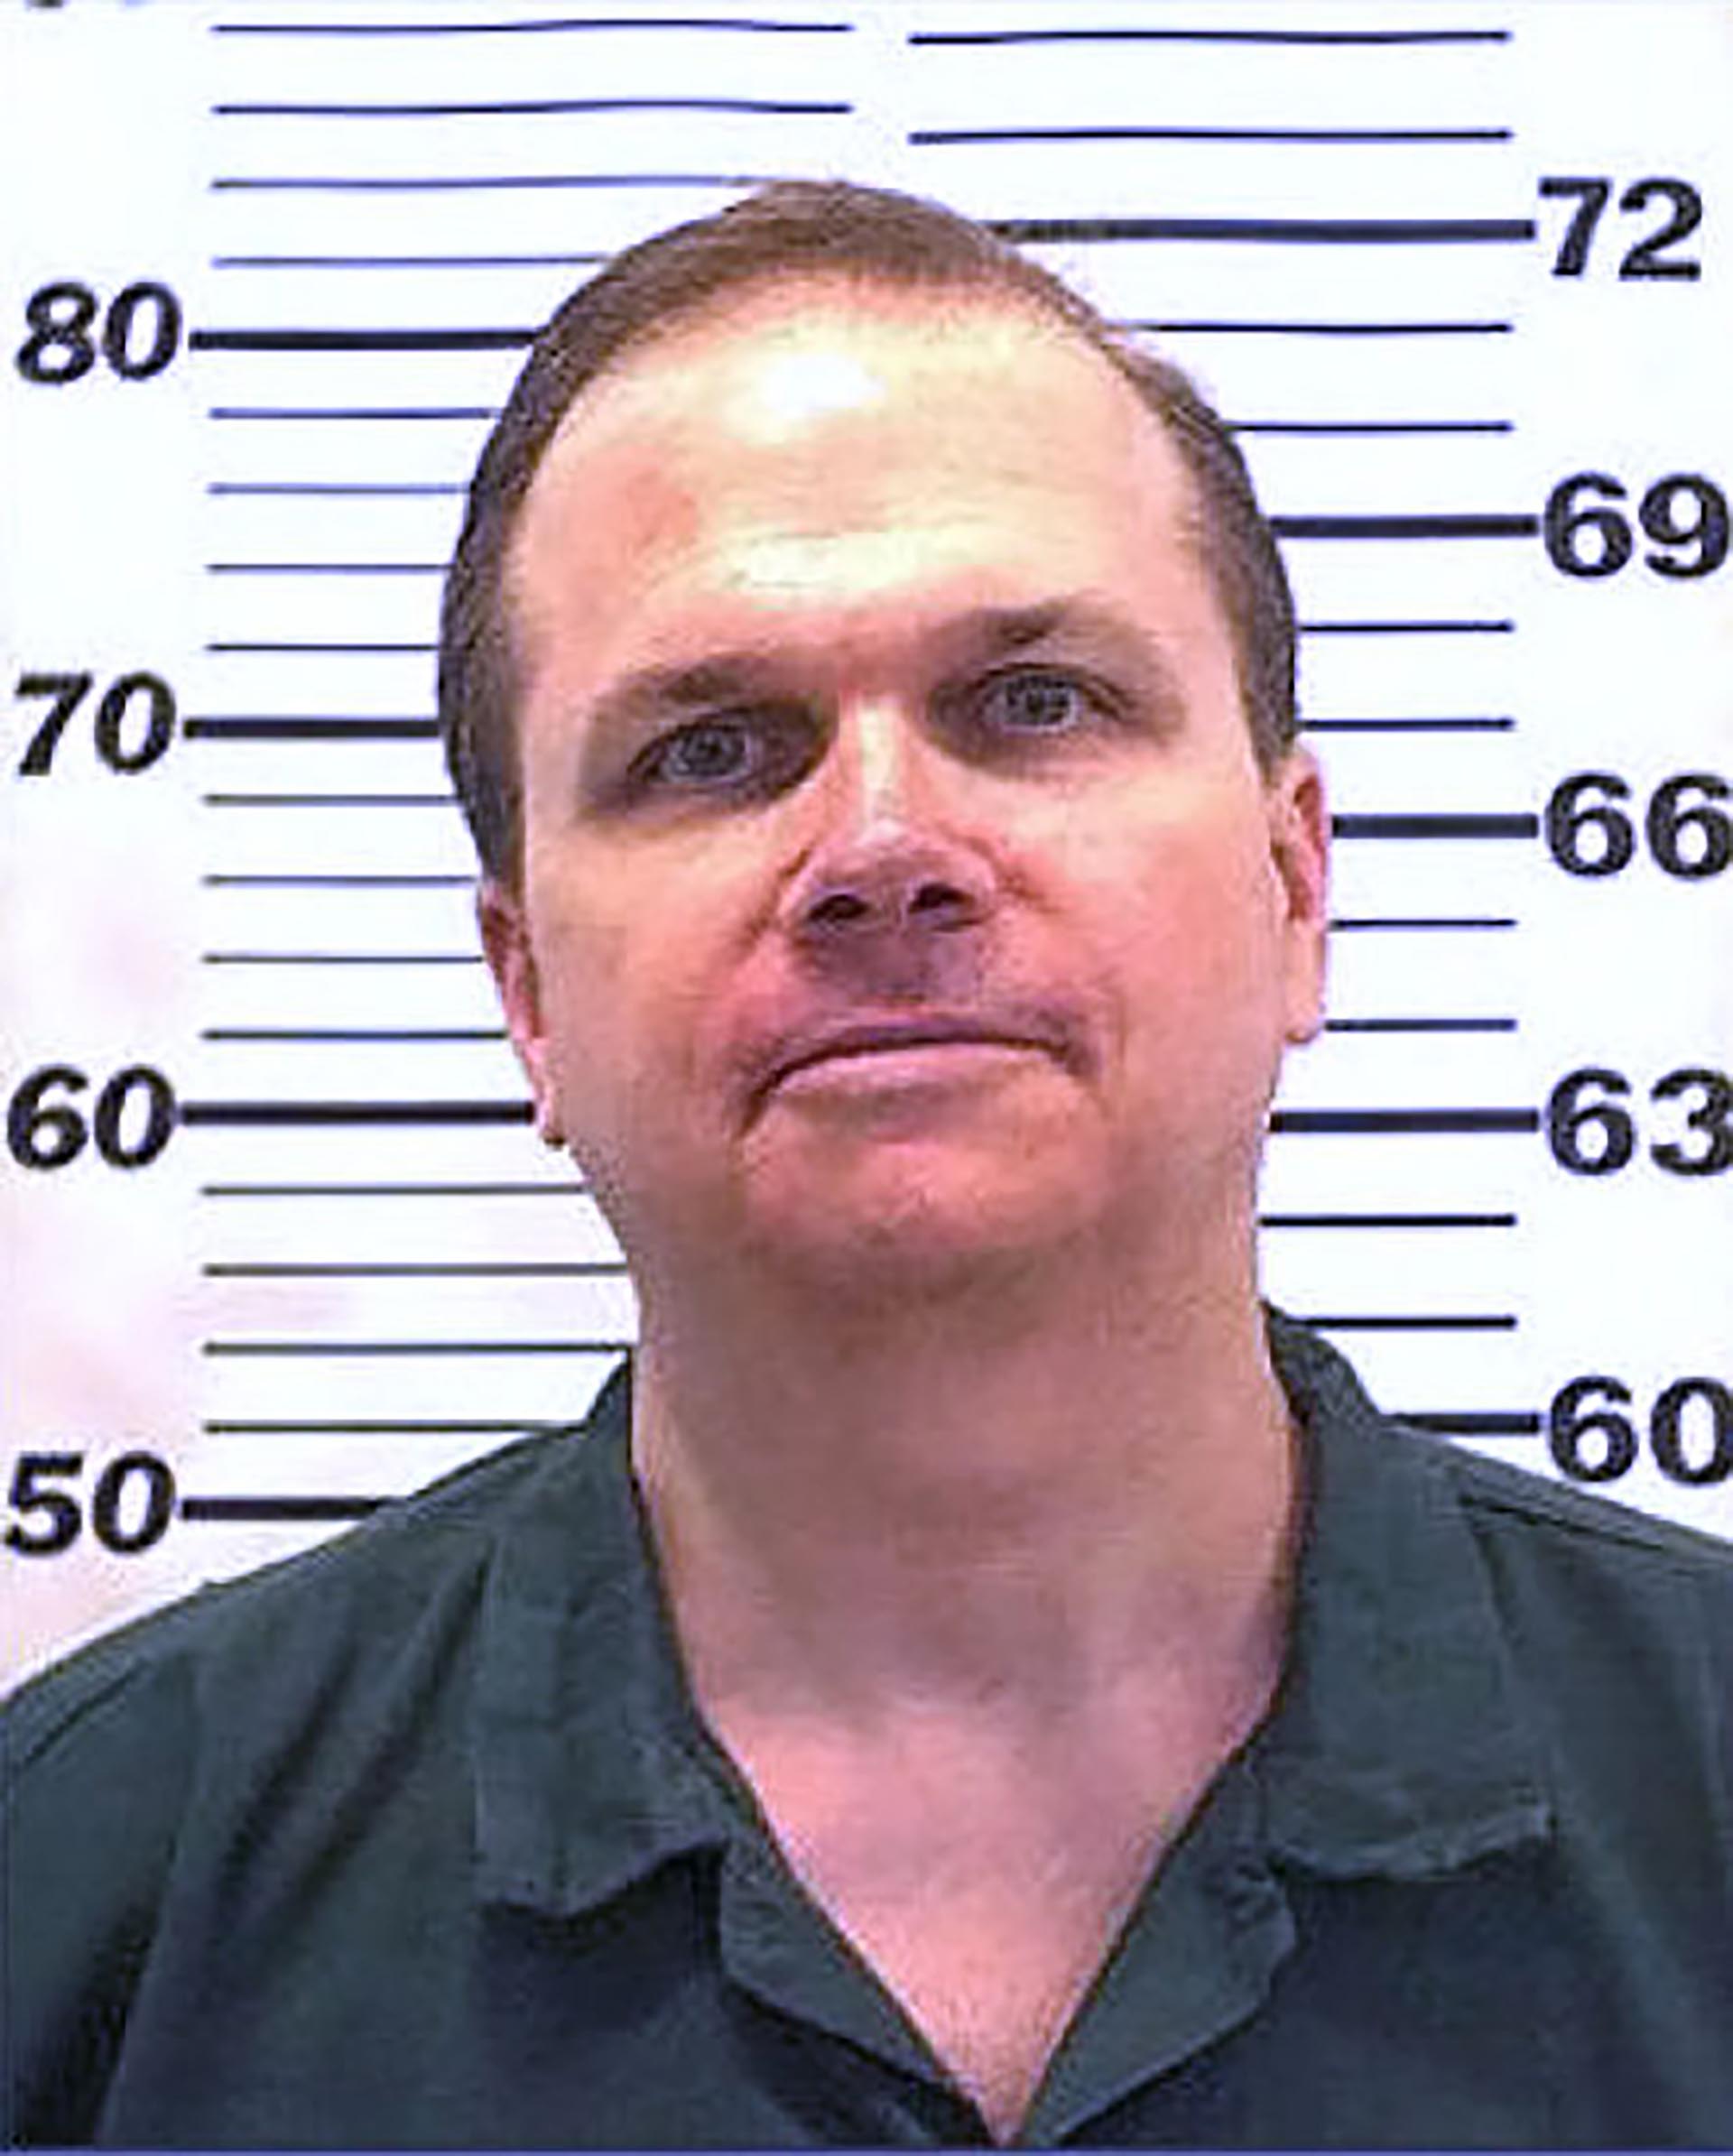 Mark Chapman continúa detenido desde hace ya 40 años